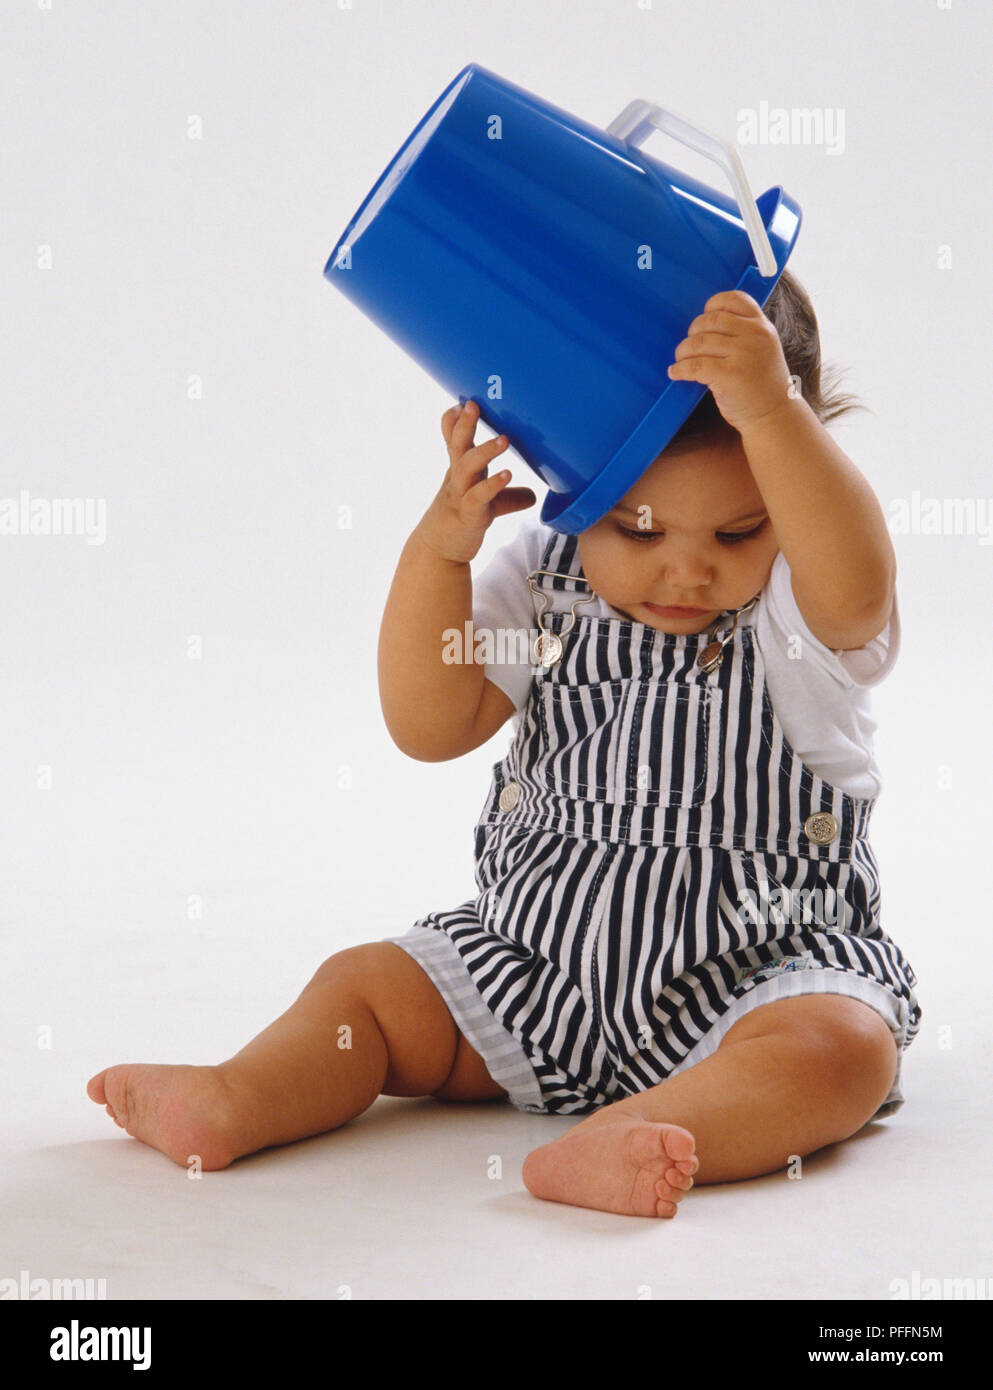 Bebé vistiendo petos rayados, sentarse, poner pucherito cuchara azul encima de su cabeza. Foto de stock